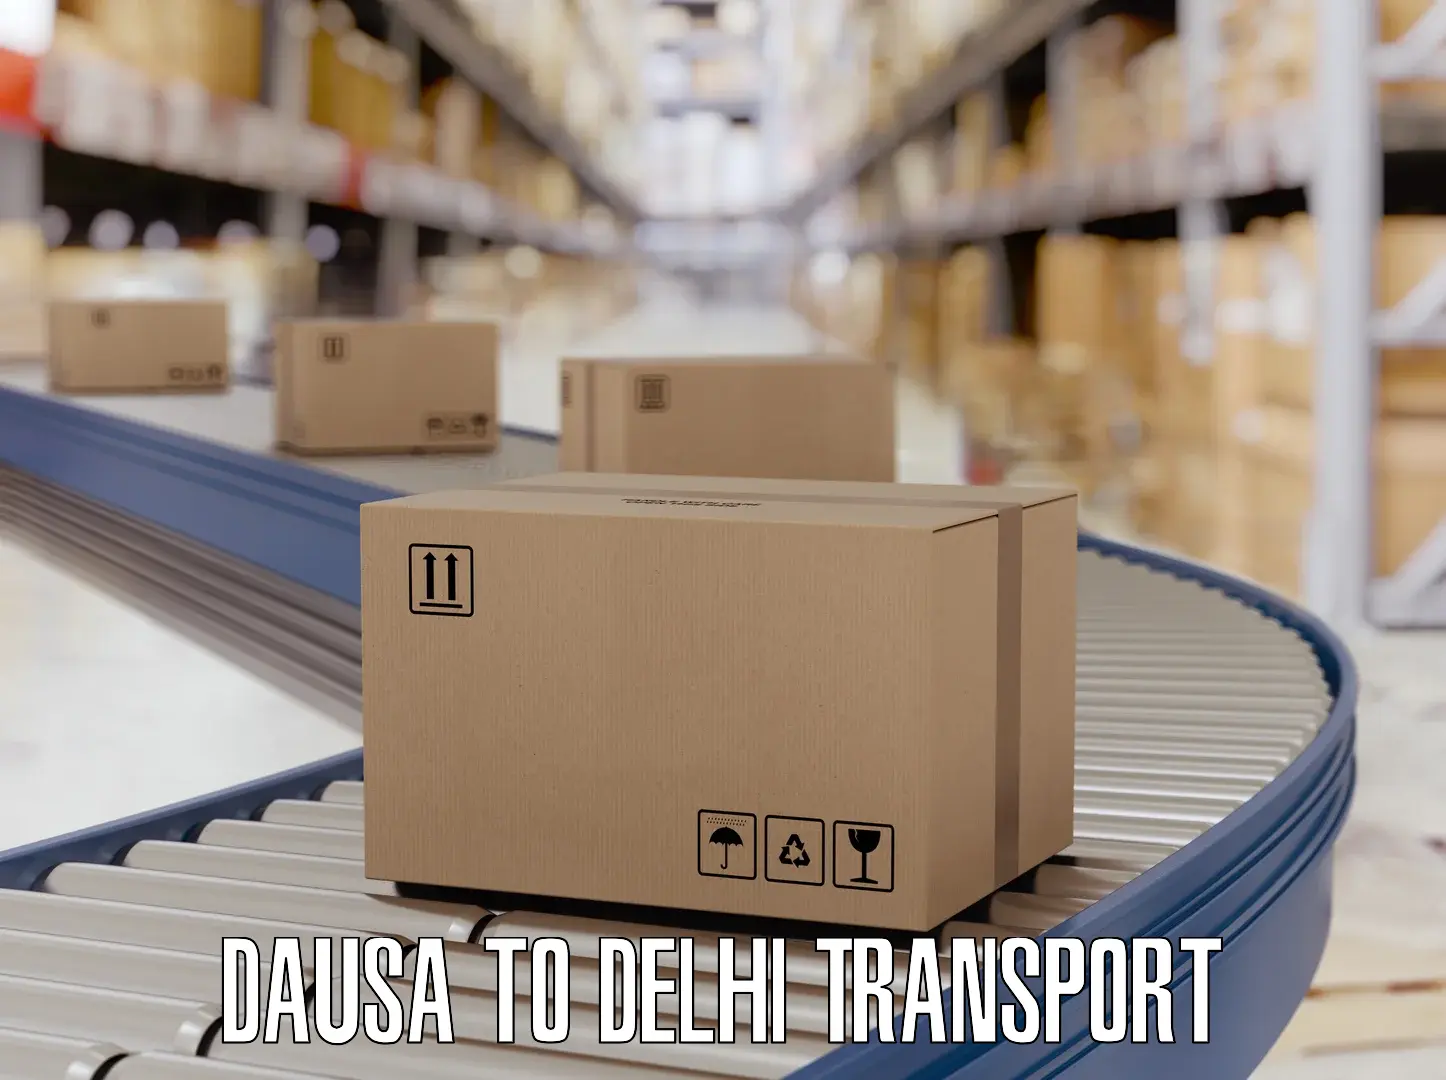 Two wheeler transport services Dausa to Jamia Millia Islamia New Delhi